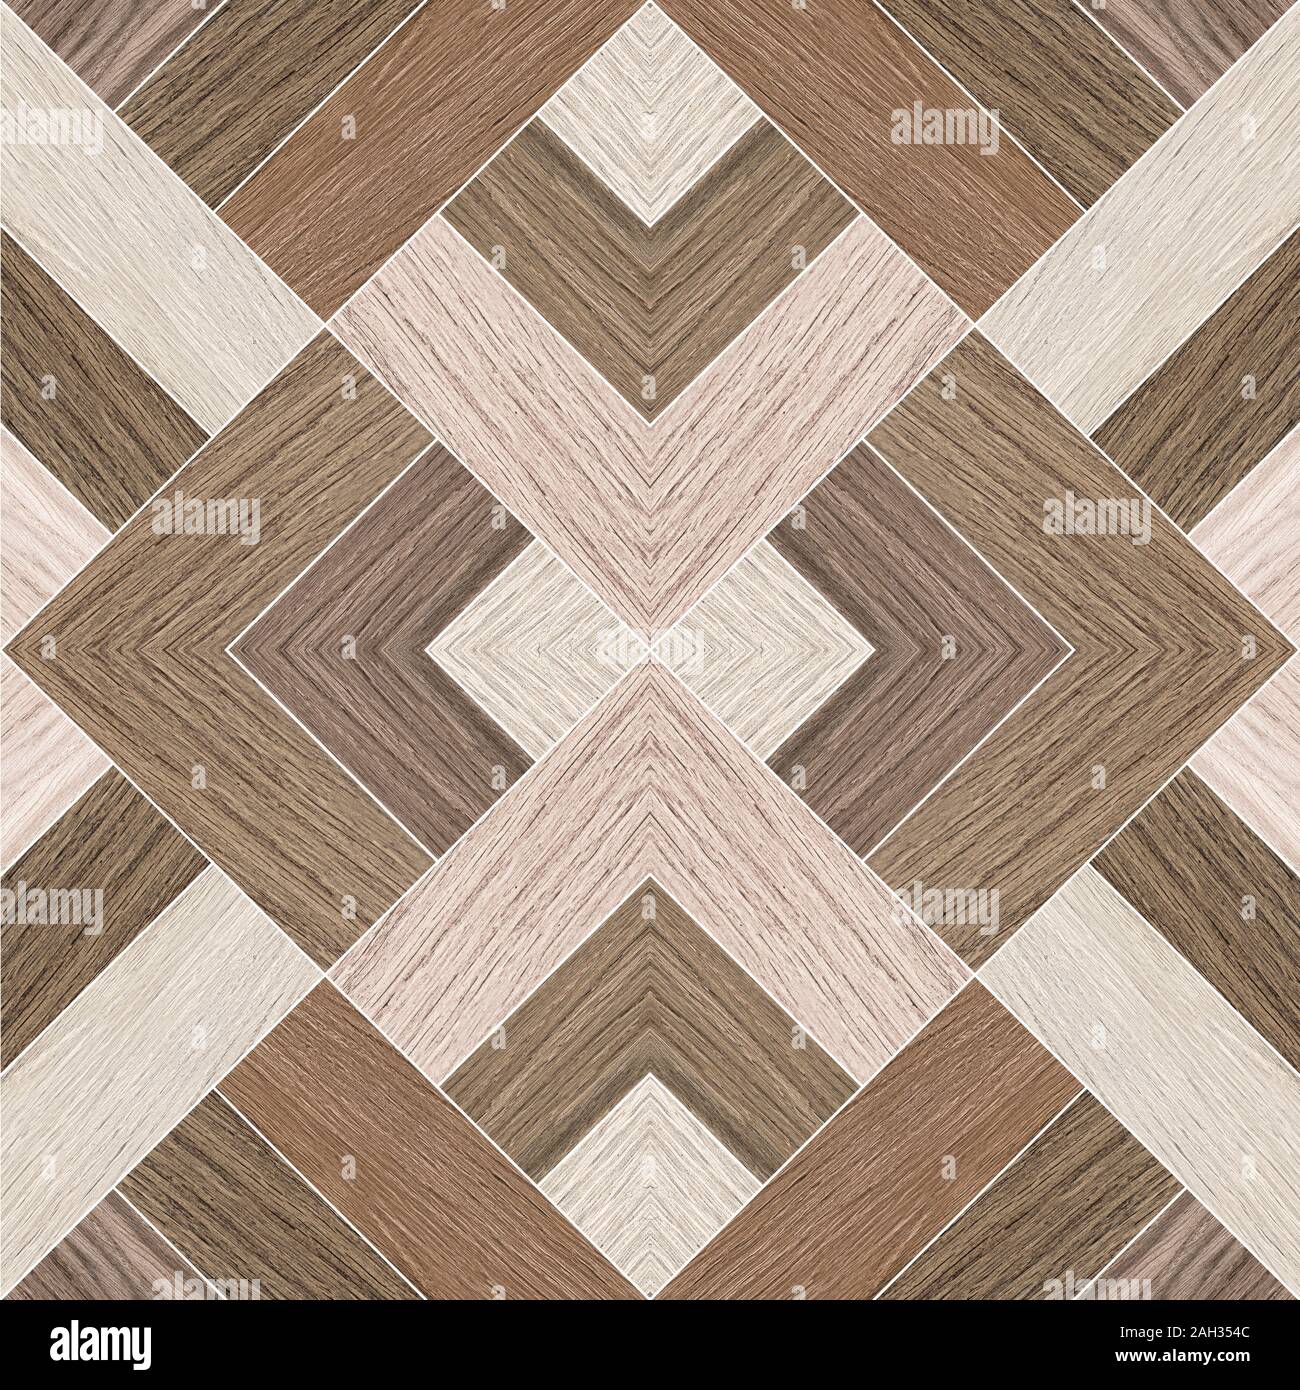 Des formes géométriques en bois, tuiles, carreaux de sol en bois Banque D'Images